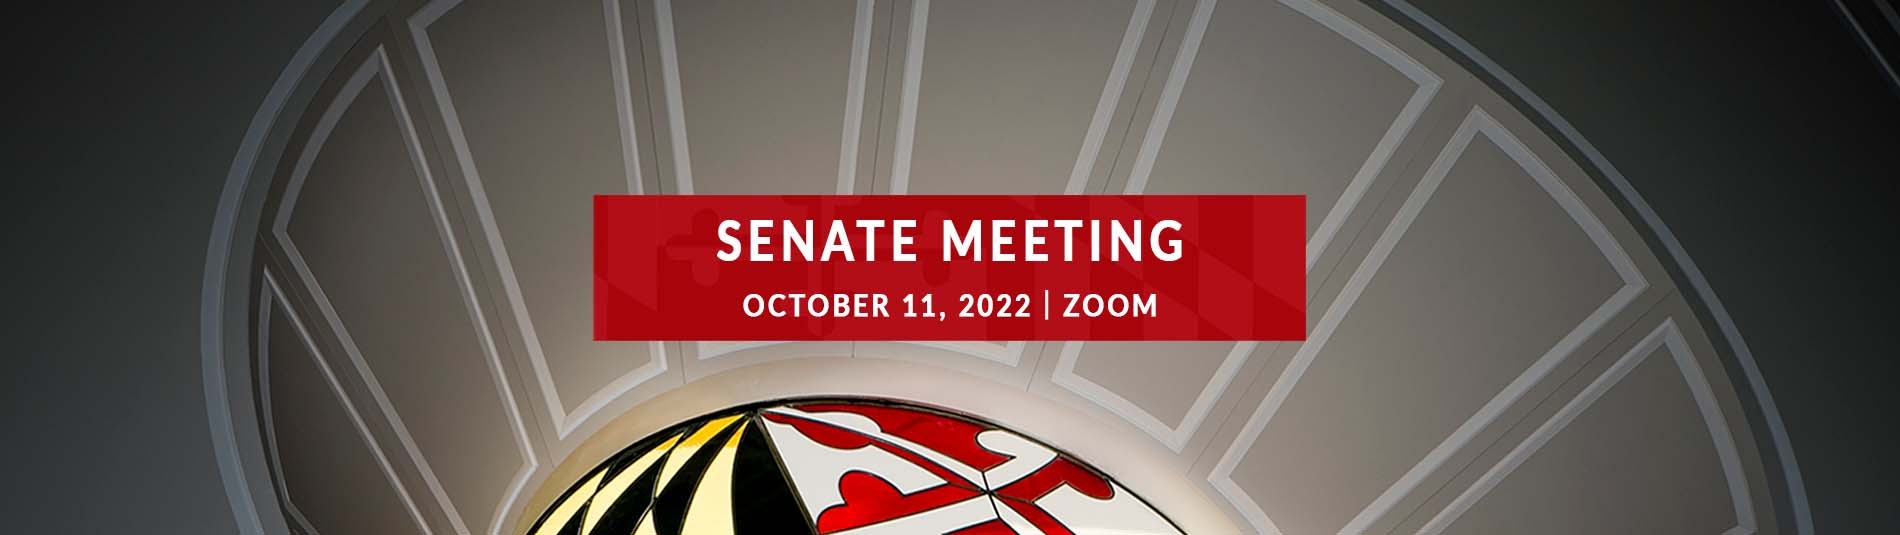 October 11, 2022 Senate Meeting